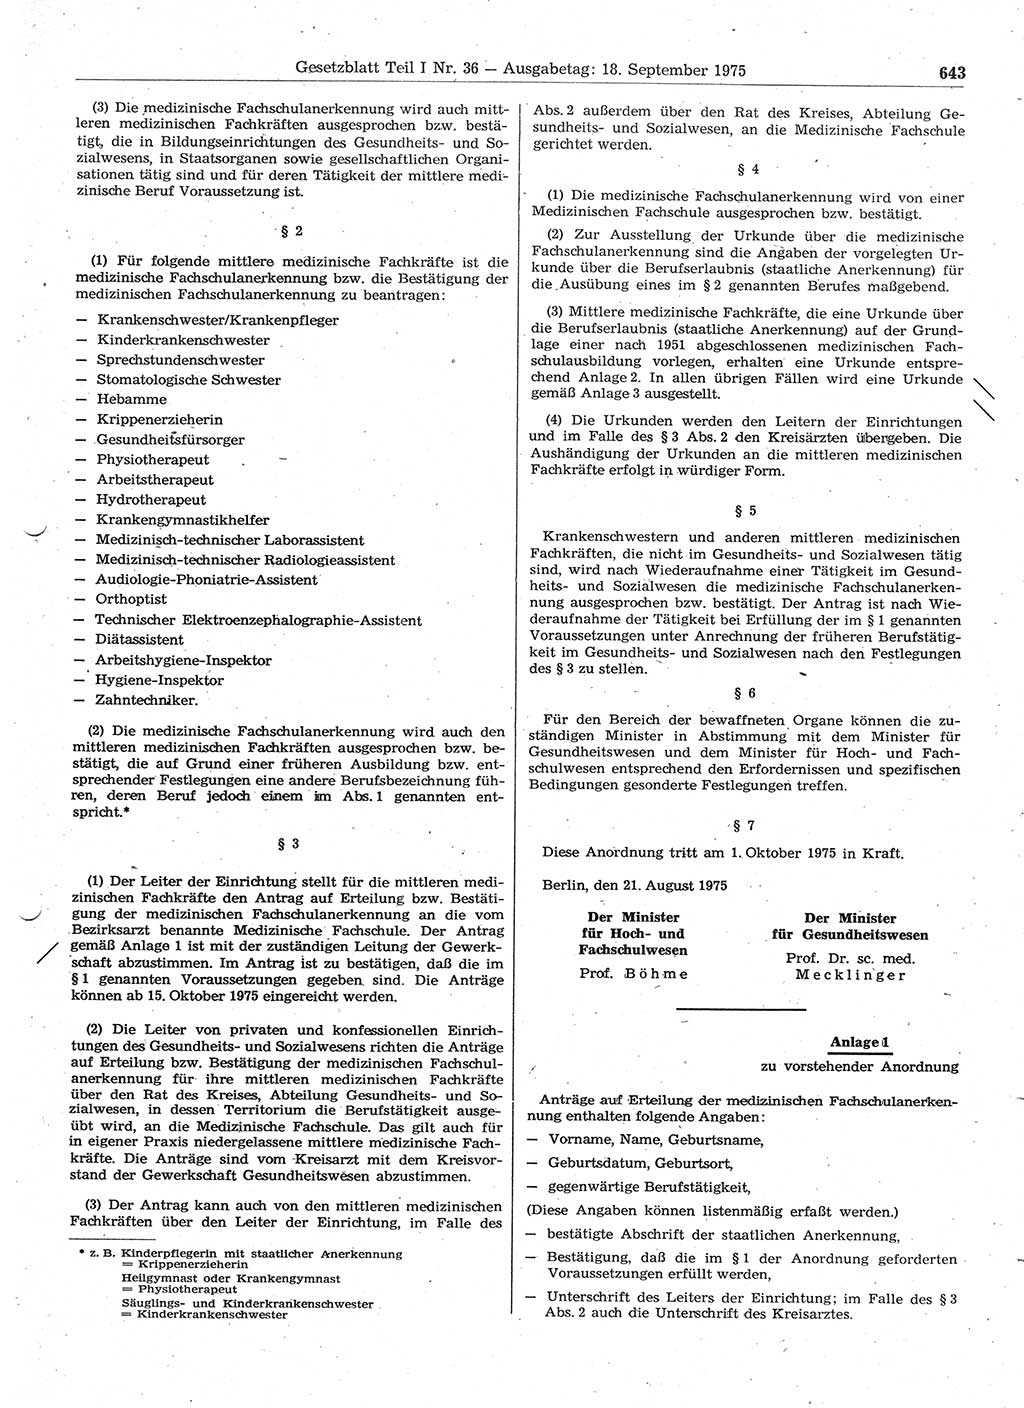 Gesetzblatt (GBl.) der Deutschen Demokratischen Republik (DDR) Teil Ⅰ 1975, Seite 643 (GBl. DDR Ⅰ 1975, S. 643)